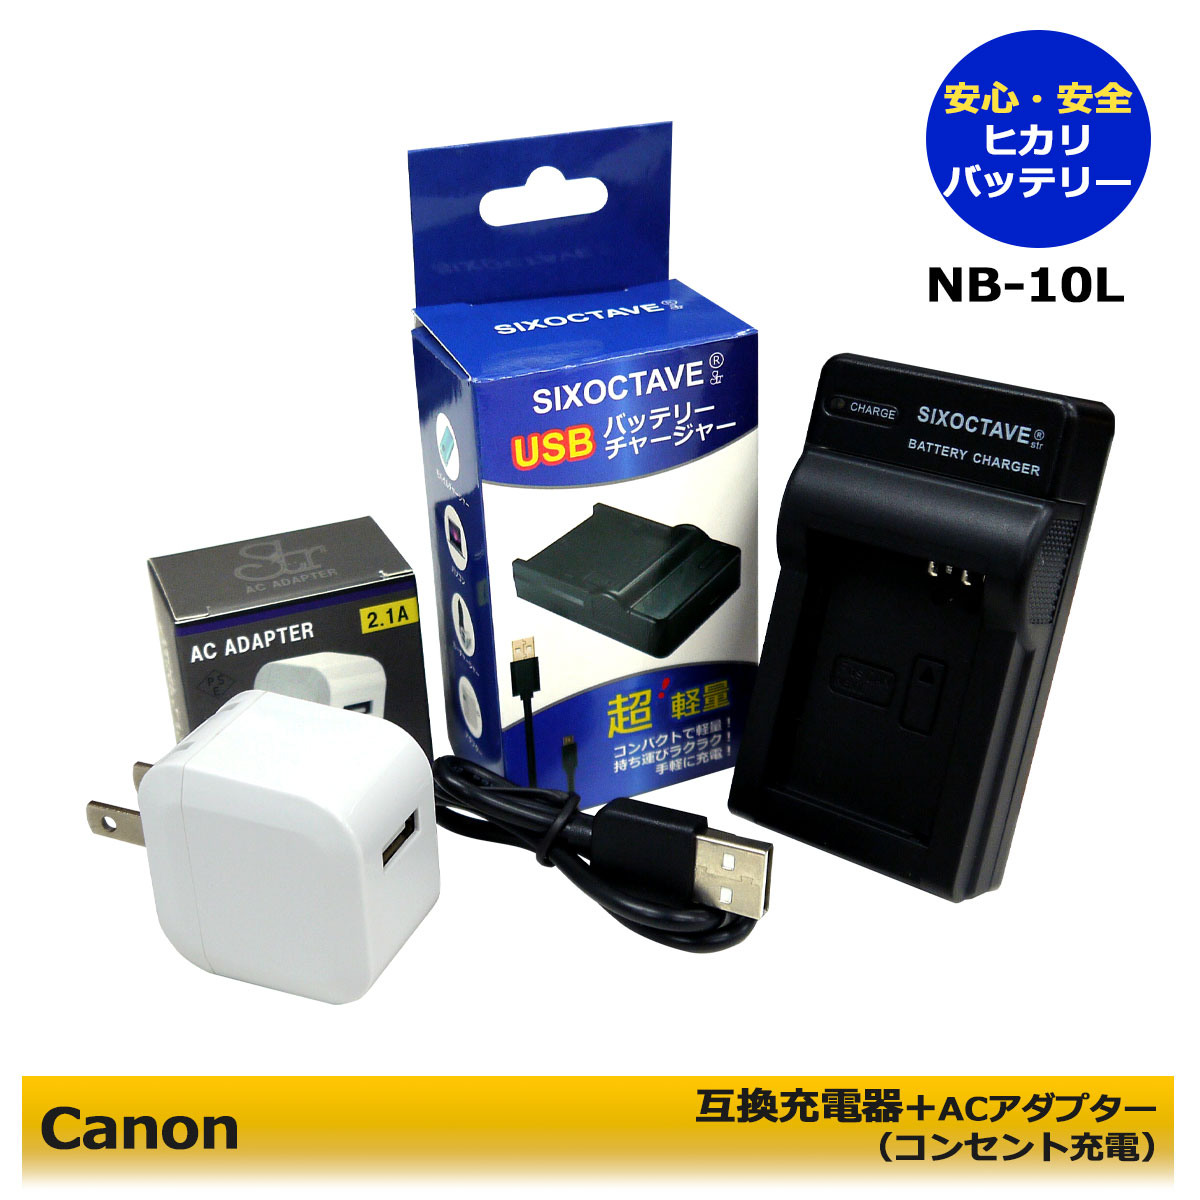 CANON NB-10L 互換USBチャージャー ACアダプタ－付き（コンパクトサイズで旅行に便利！）PowerShot SX40 HS / PowerShot SX50 HS / PowerShot SX60 HS PowerShot G1 X / PowerShot G3 X / PowerShot G15 / PowerShot G16 (A2.1) NB-10L